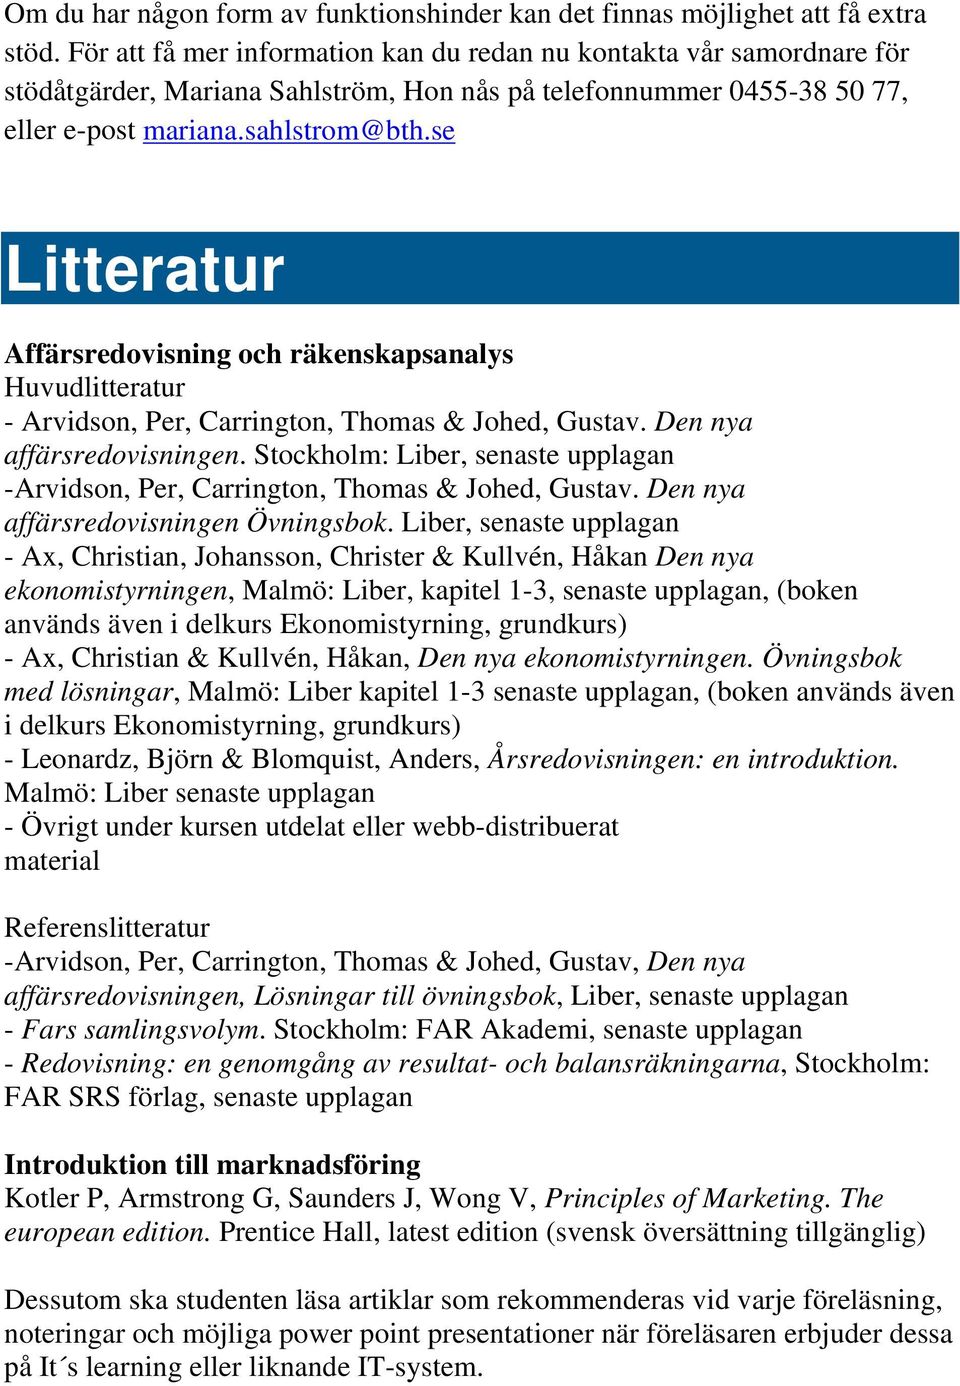 se Litteratur Affärsredovisning och räkenskapsanalys Huvudlitteratur - Arvidson, Per, Carrington, Thomas & Johed, Gustav. Den nya affärsredovisningen.